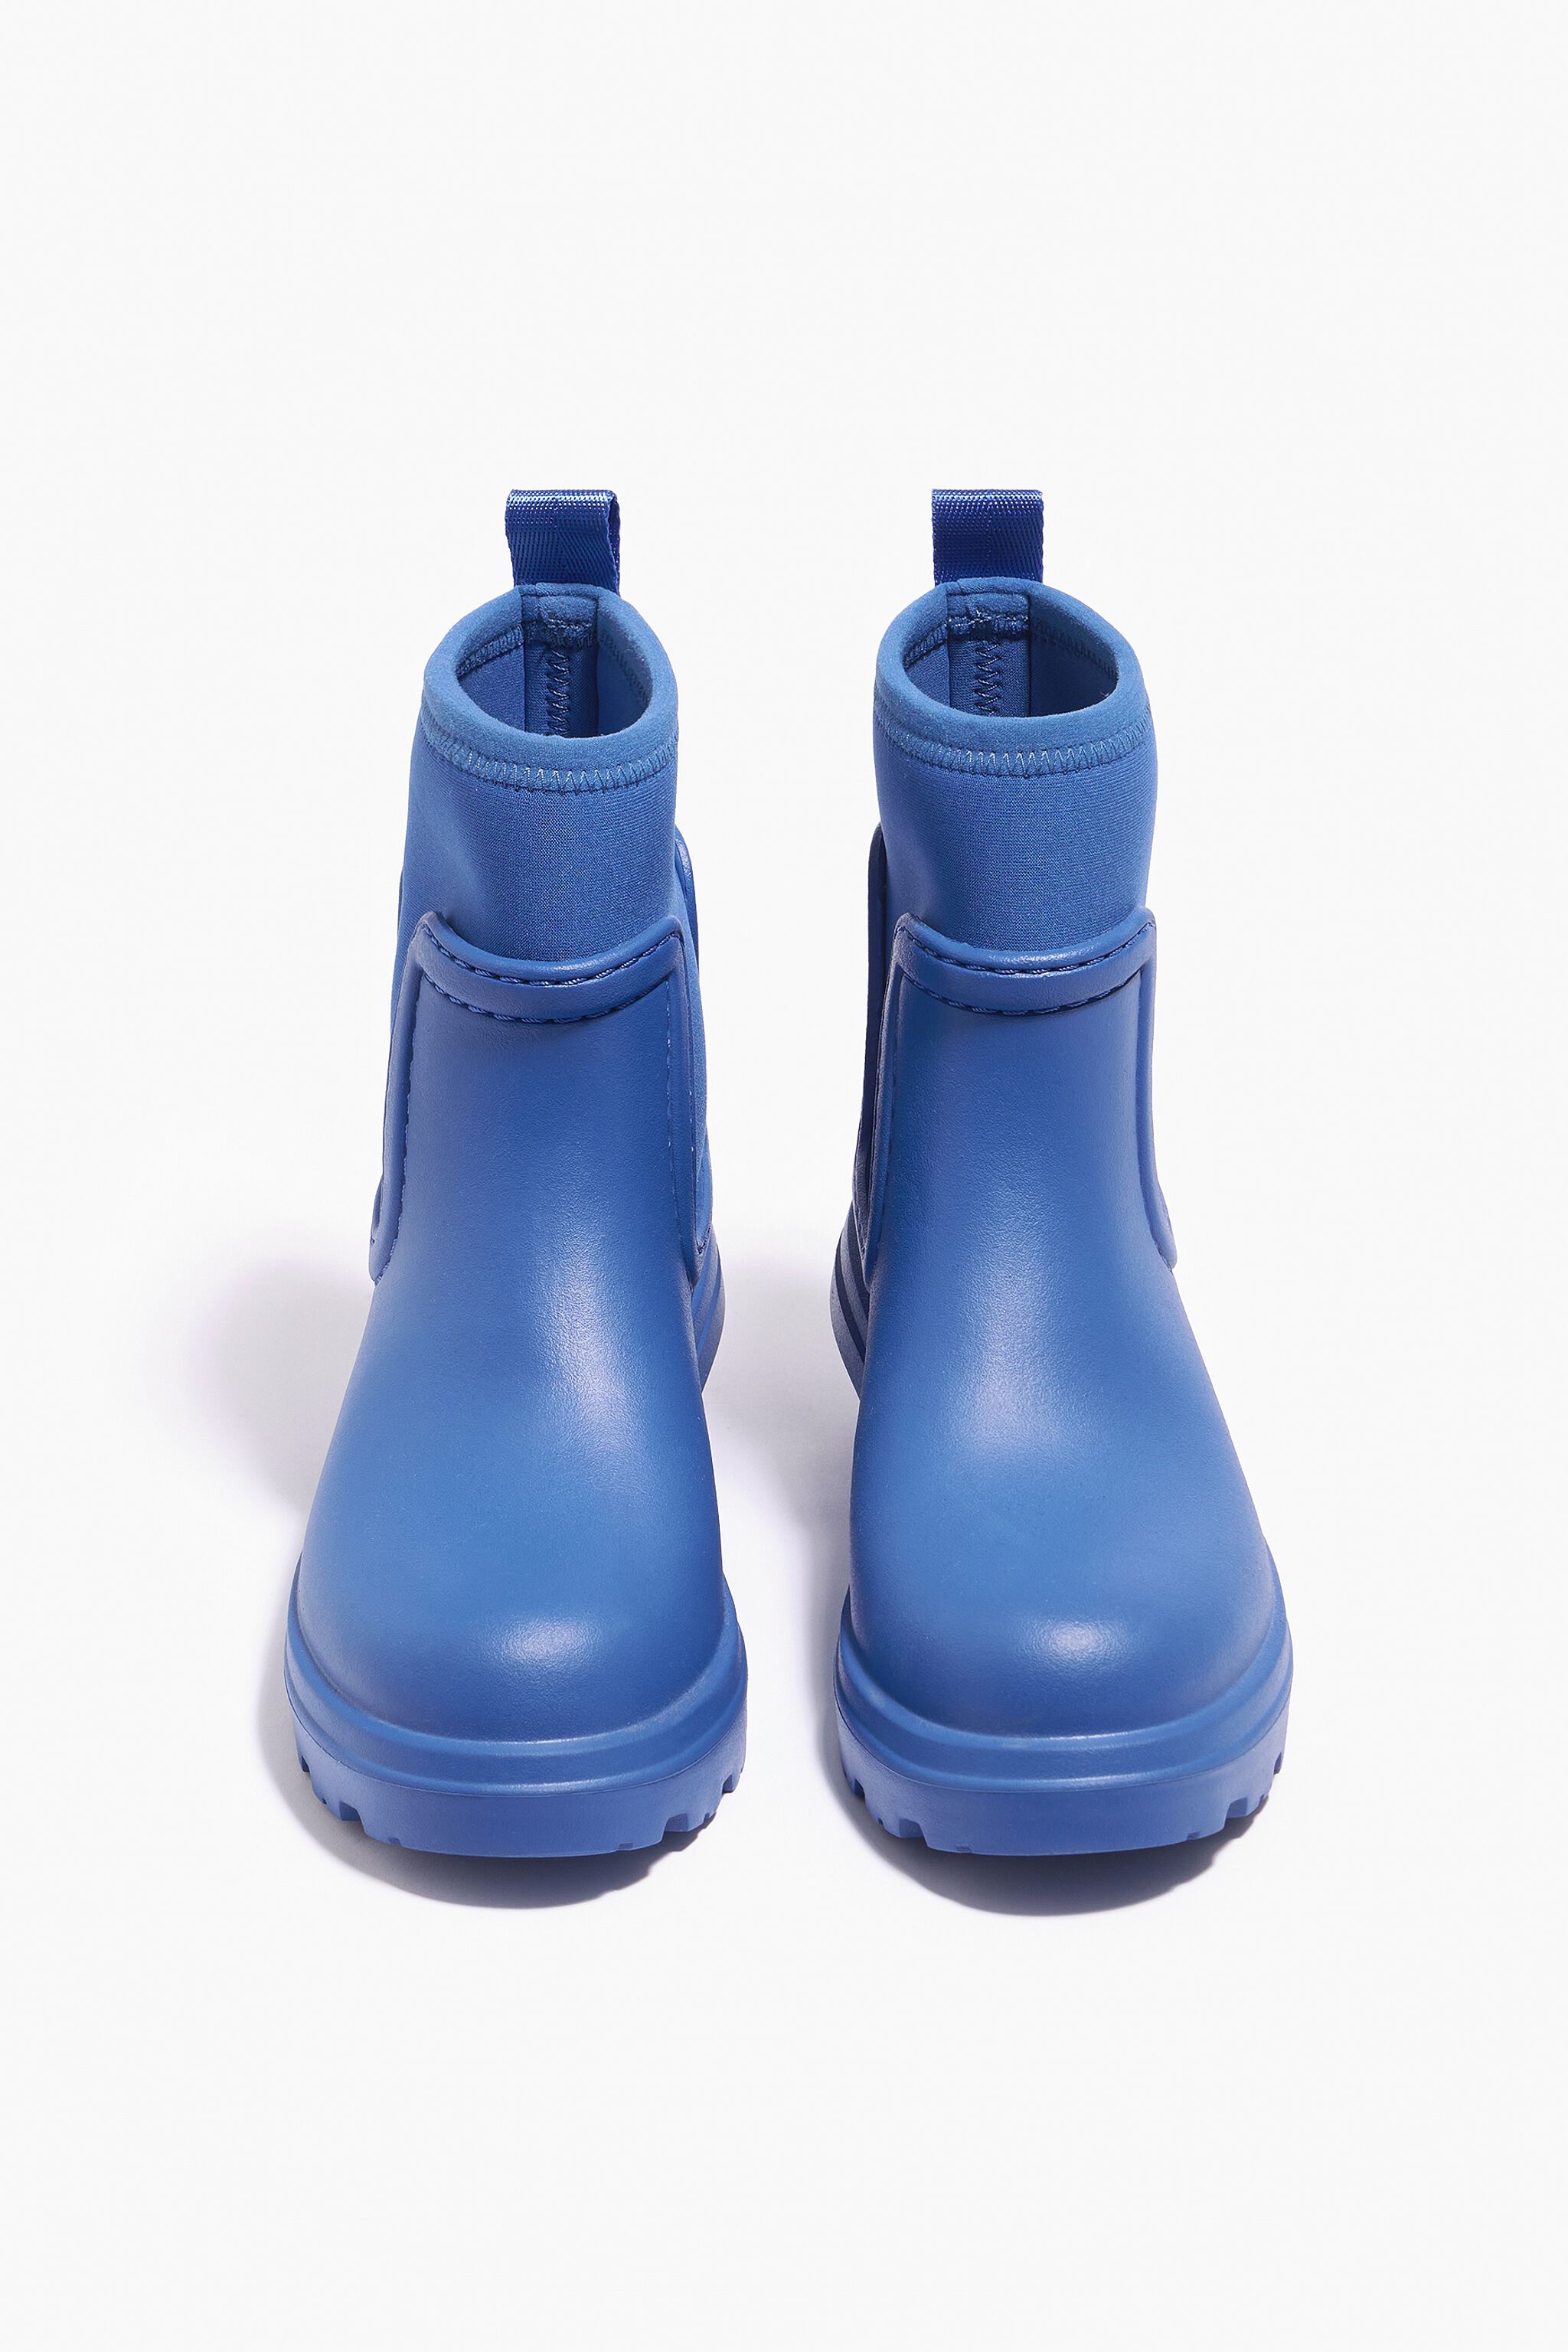 DAMEN Schuhe Waterproof Stiefel Bimba&Lola Schwarze Wasserstiefel mit grünen und blauen Bögen Schwarz/Blau/Grün 39 Rabatt 74 % 